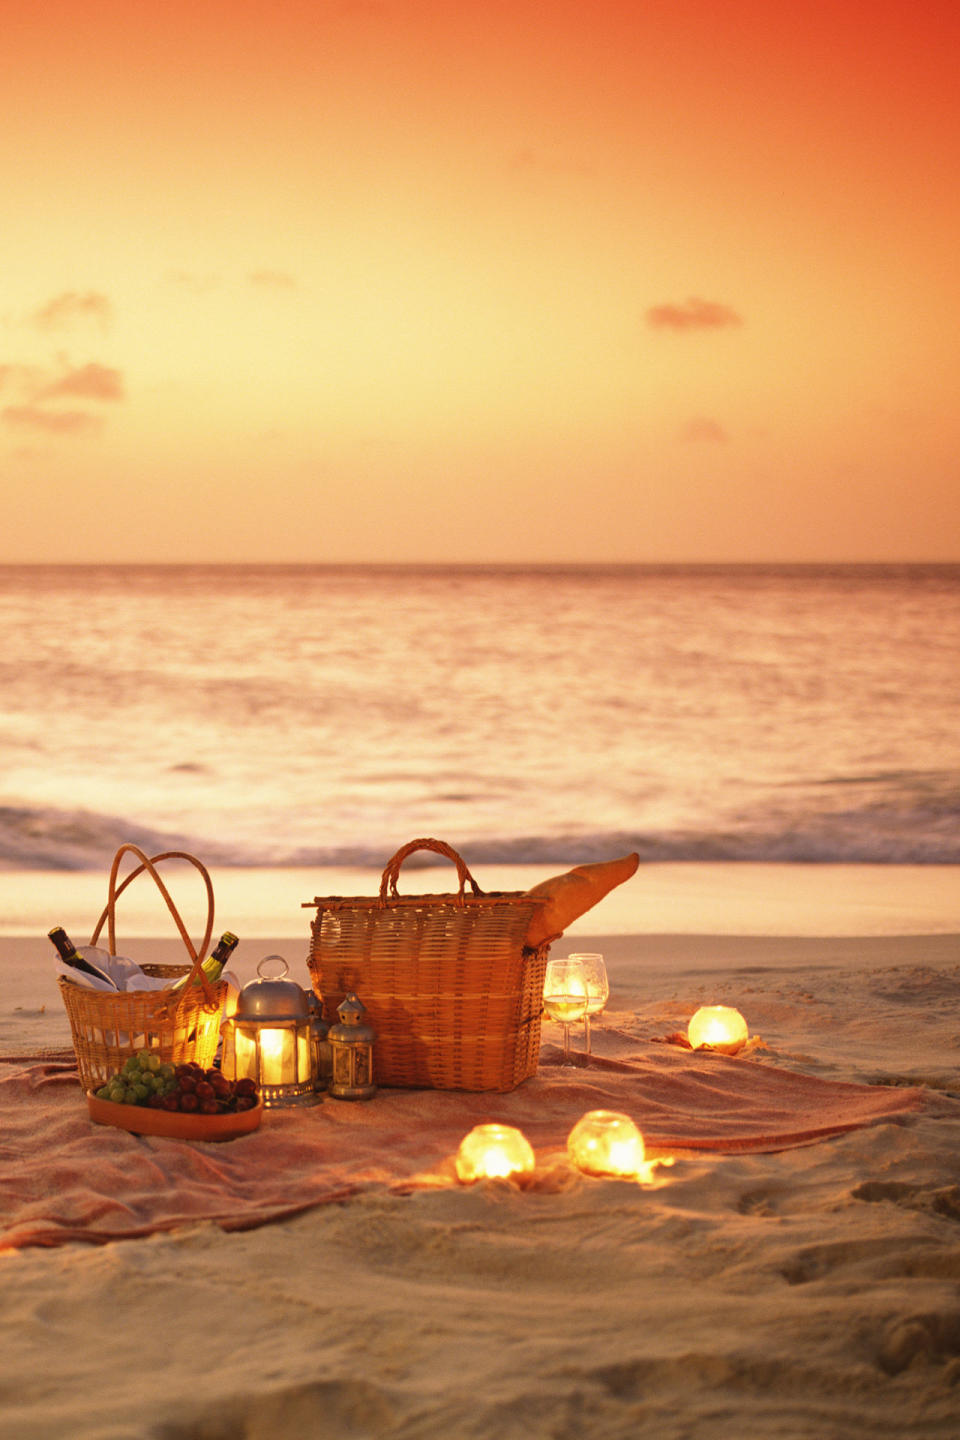 Savor a sunset picnic.